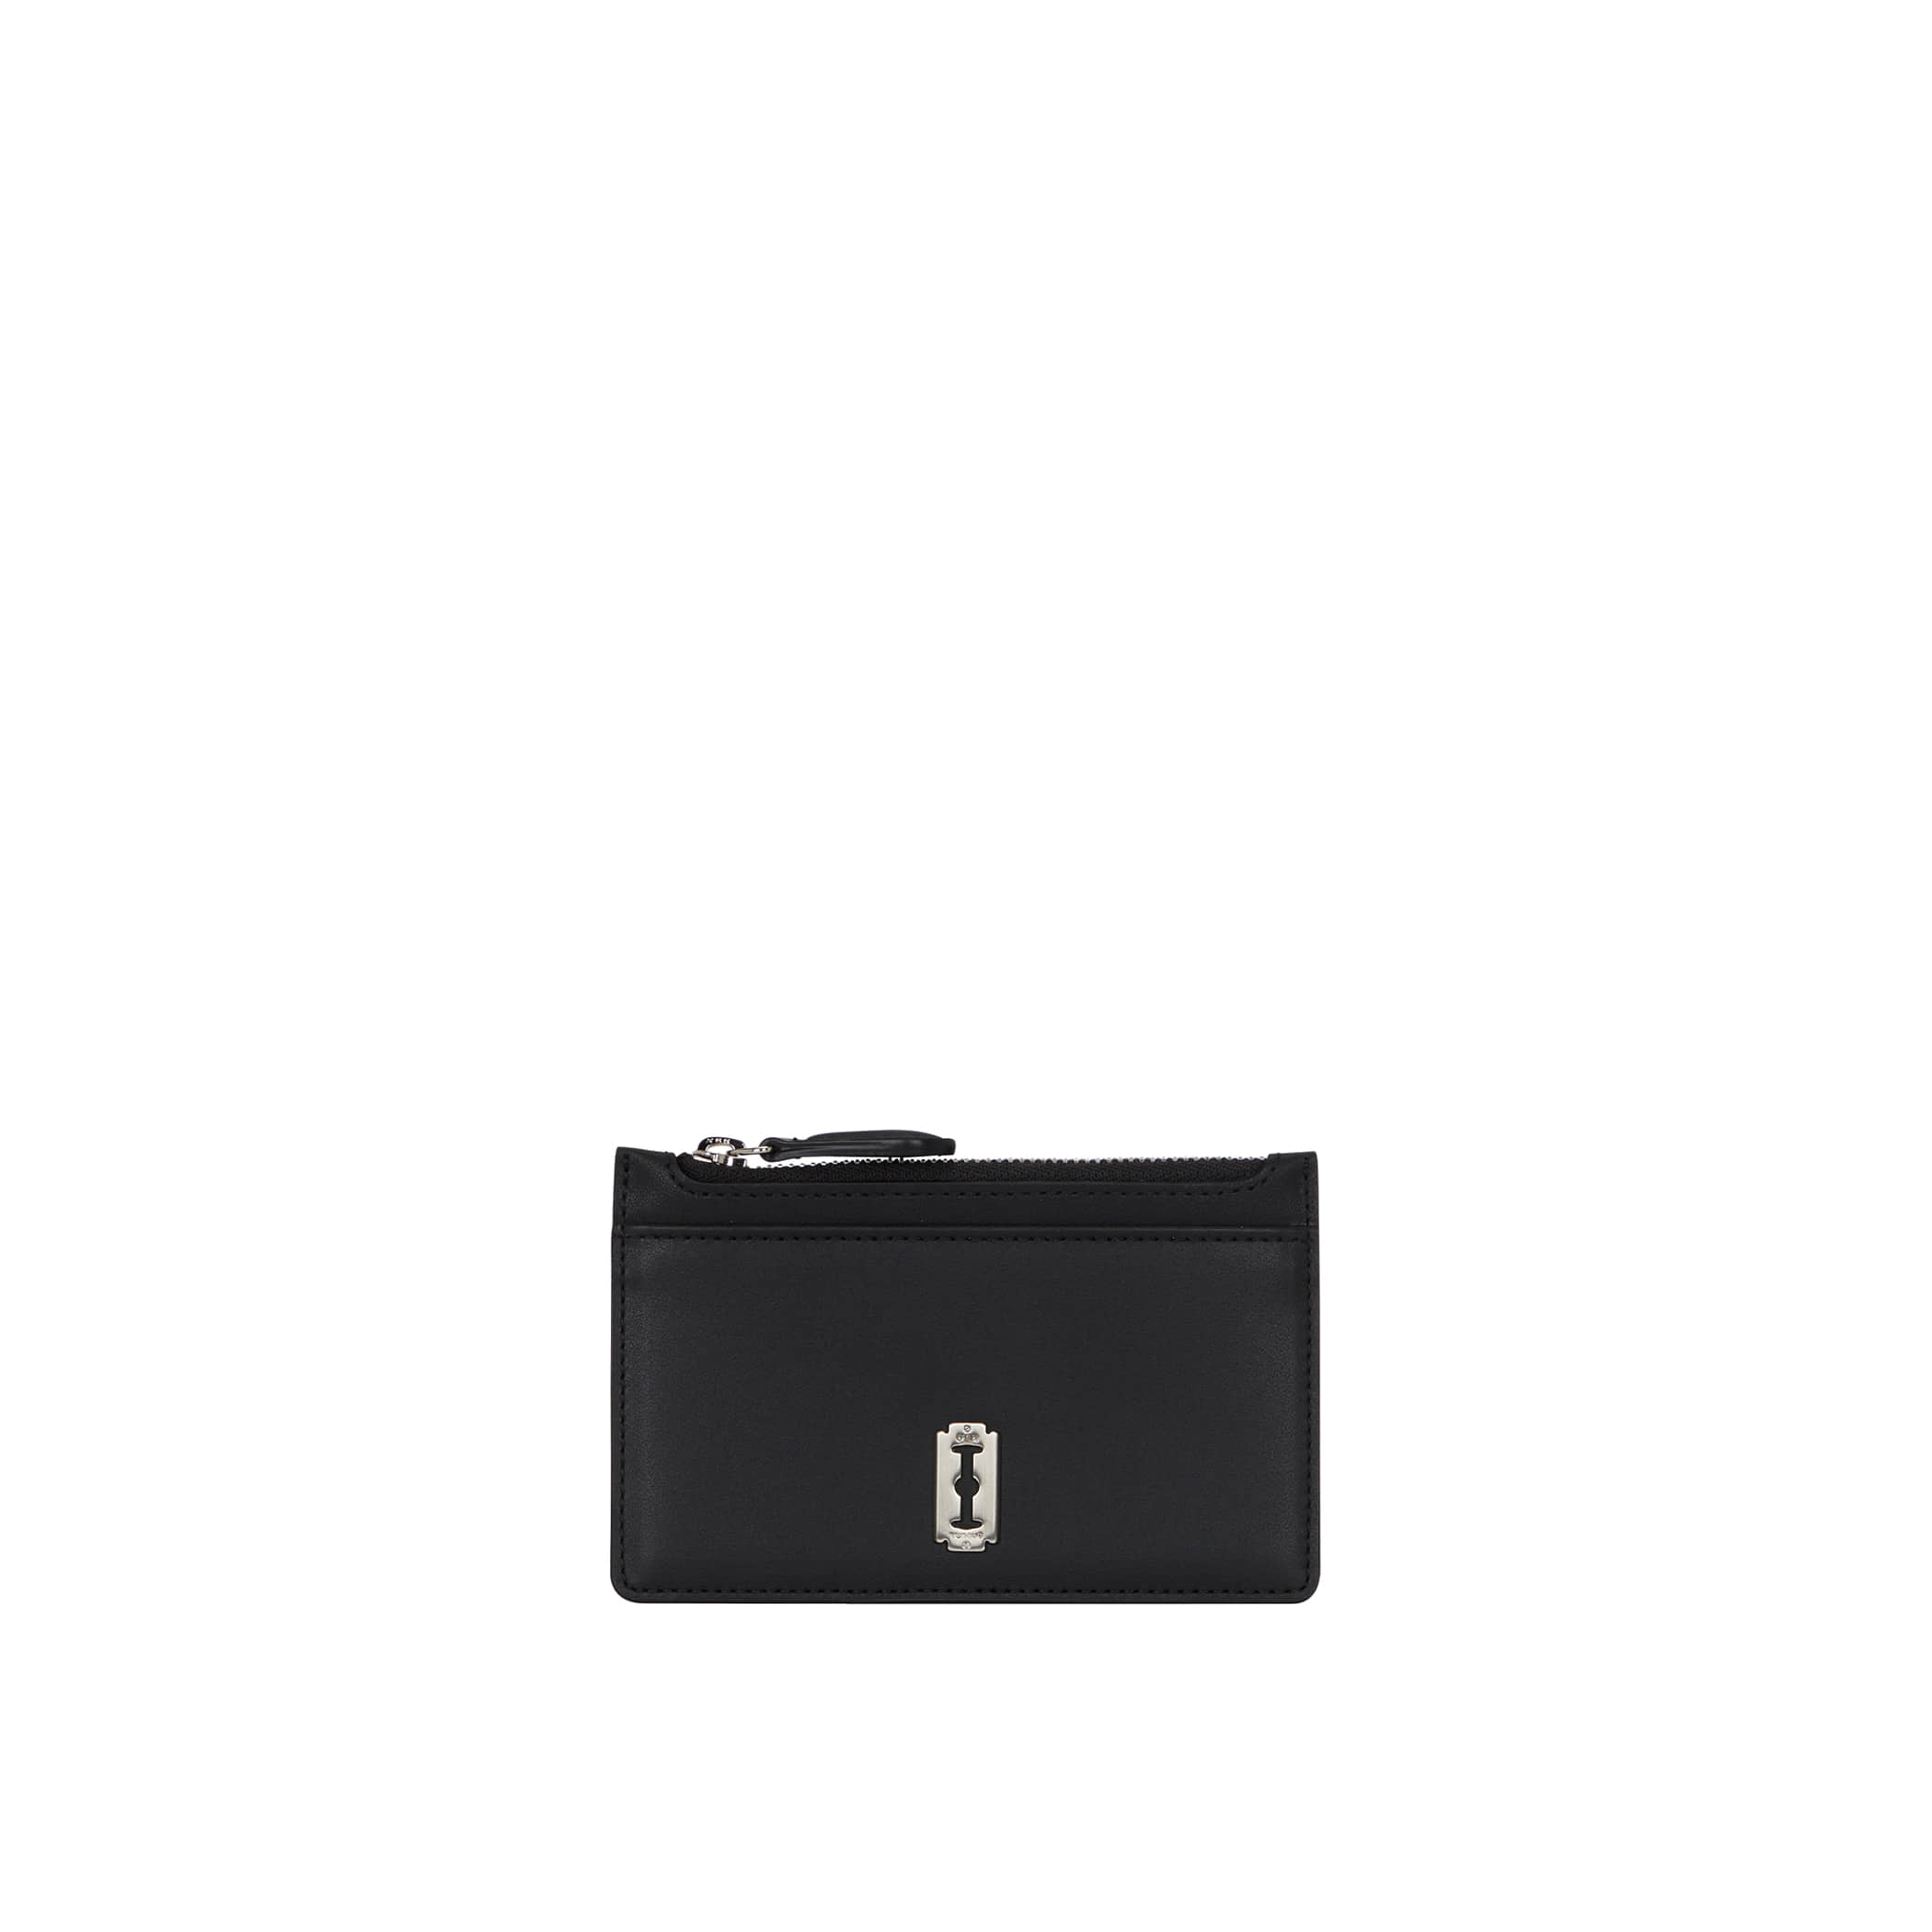 Perfec Index Zipper Card Wallet (퍼펙 인덱스 지퍼 카드지갑) Black